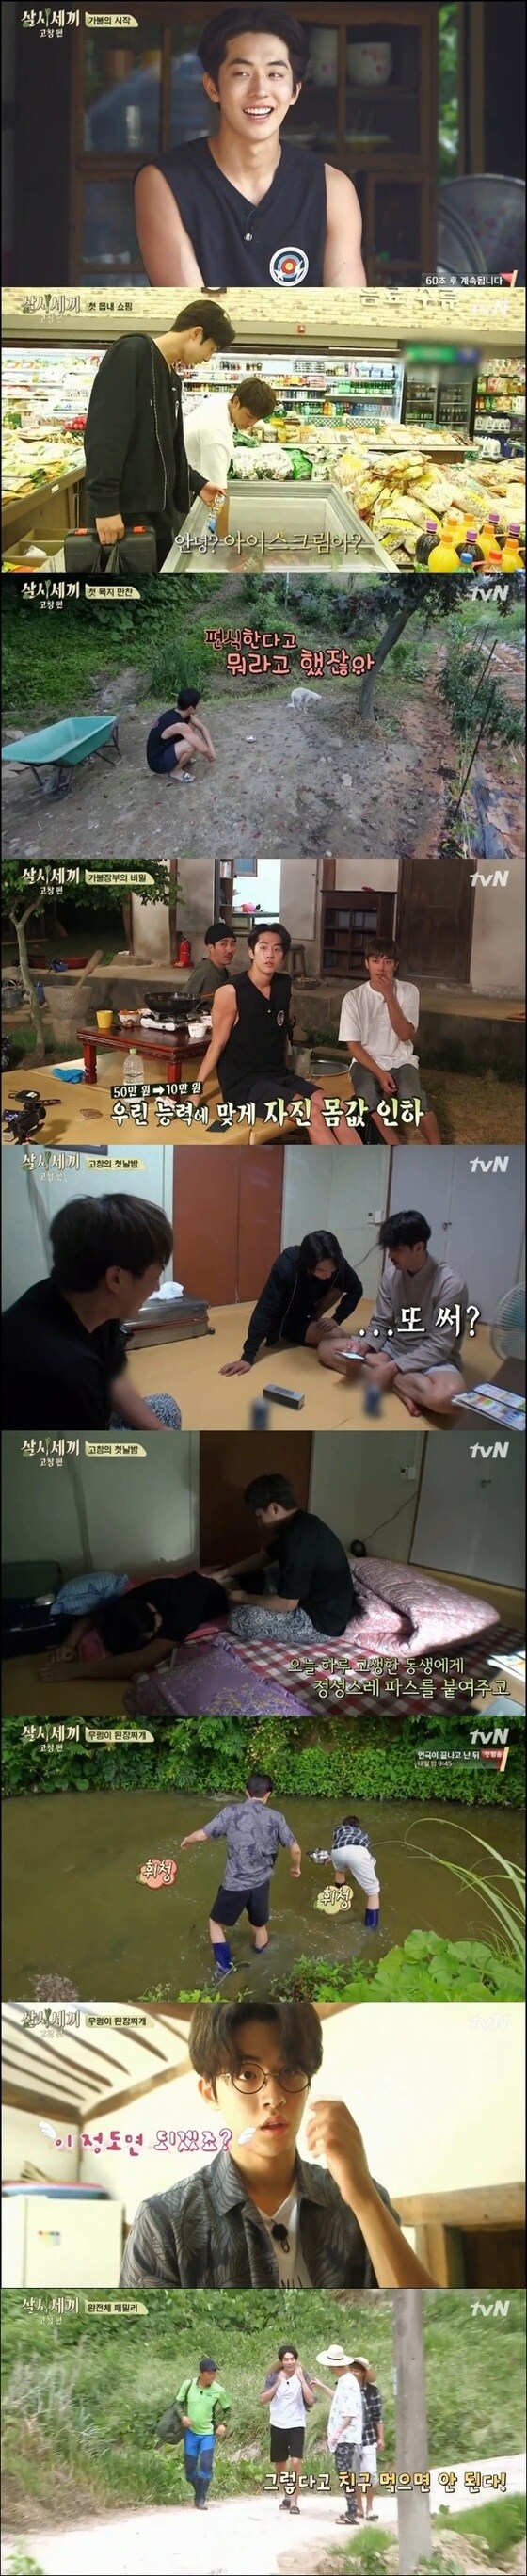 남주혁이 '삼시세끼 고창편'에 새 멤버로 합류했다. © News1star / tvN '삼시세끼 고창편' 1회 캡처